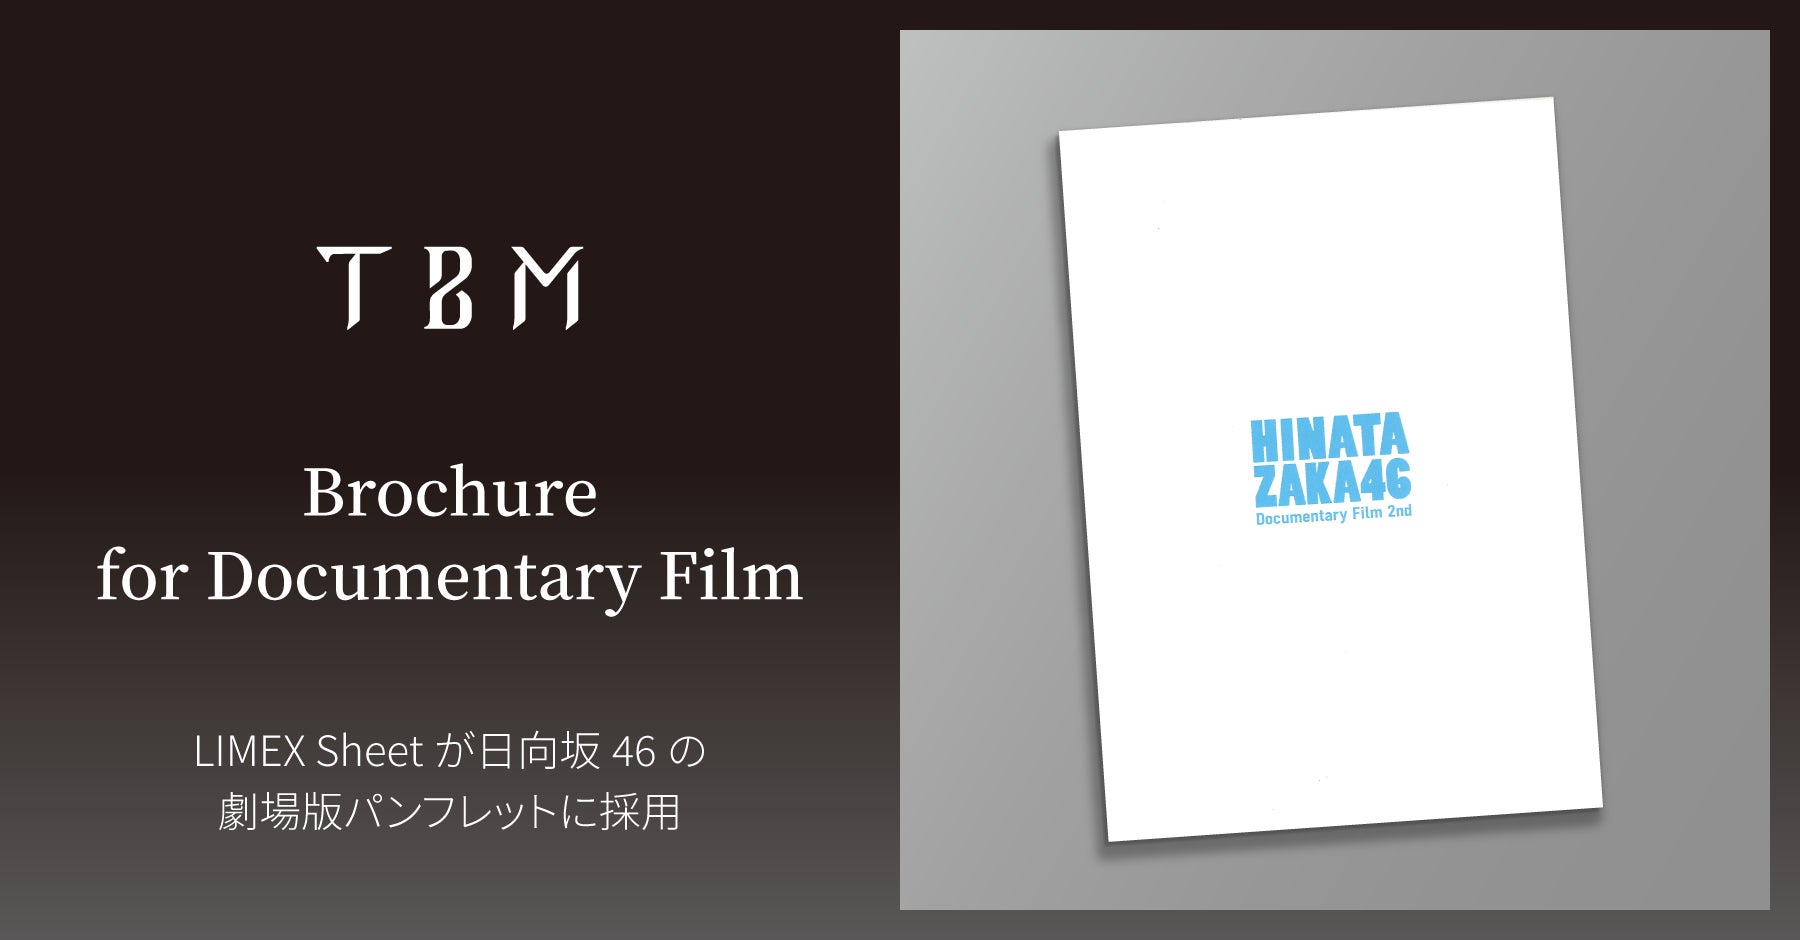 石灰石を主原料とする「LIMEX Sheet」が、日向坂46のドキュメンタリー映画『希望と絶望』の劇場パンフレットに採用のサブ画像1